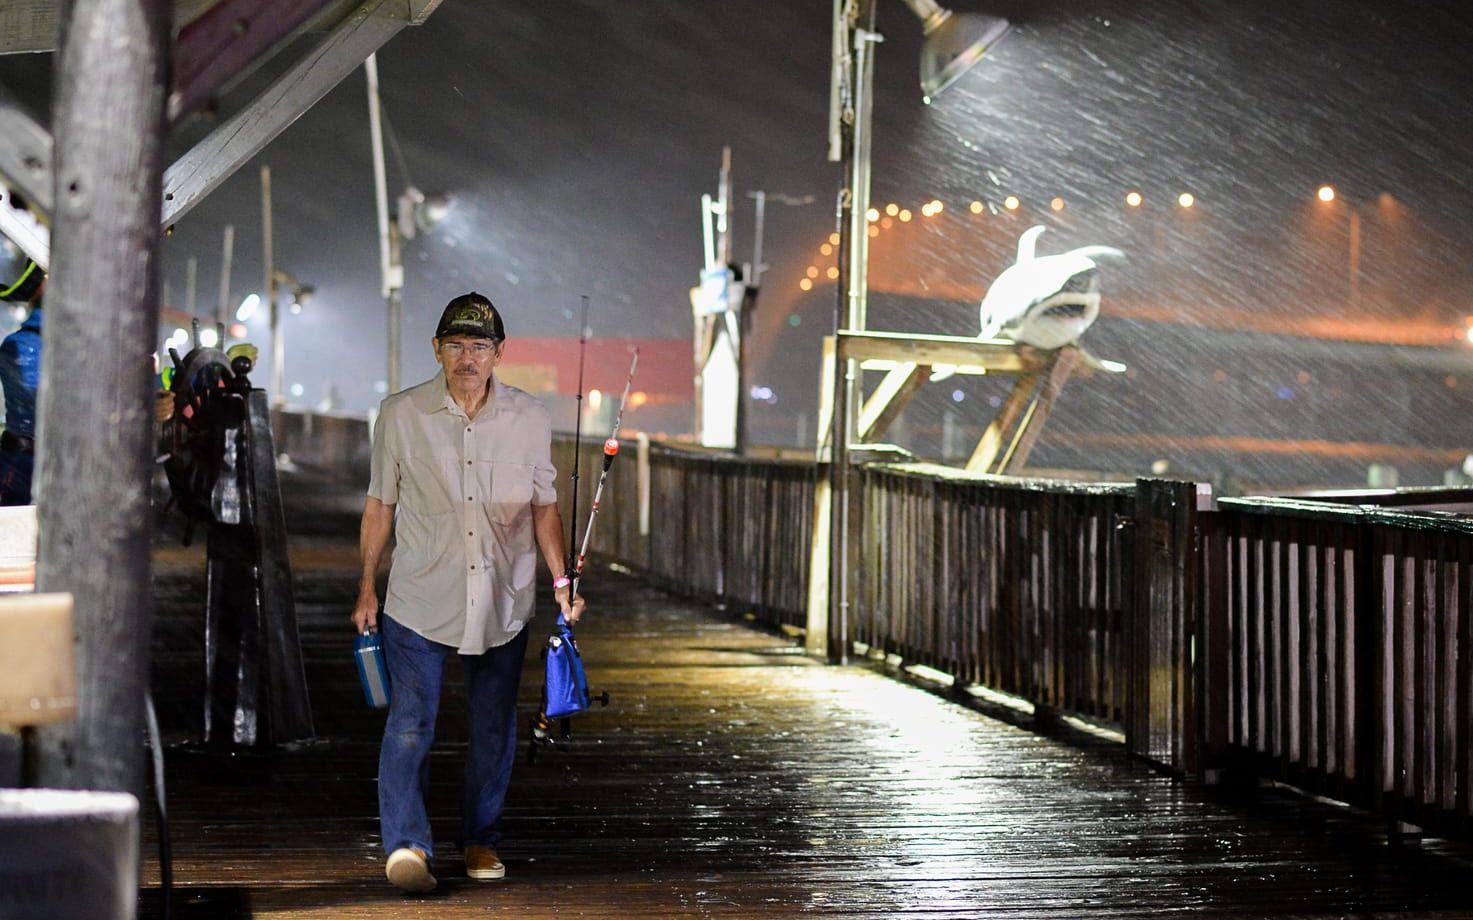 Rogelio Ortiz tar sig av Pirate's landing fishing pier i skyfallet från orkanen Harvey. Bild: TT